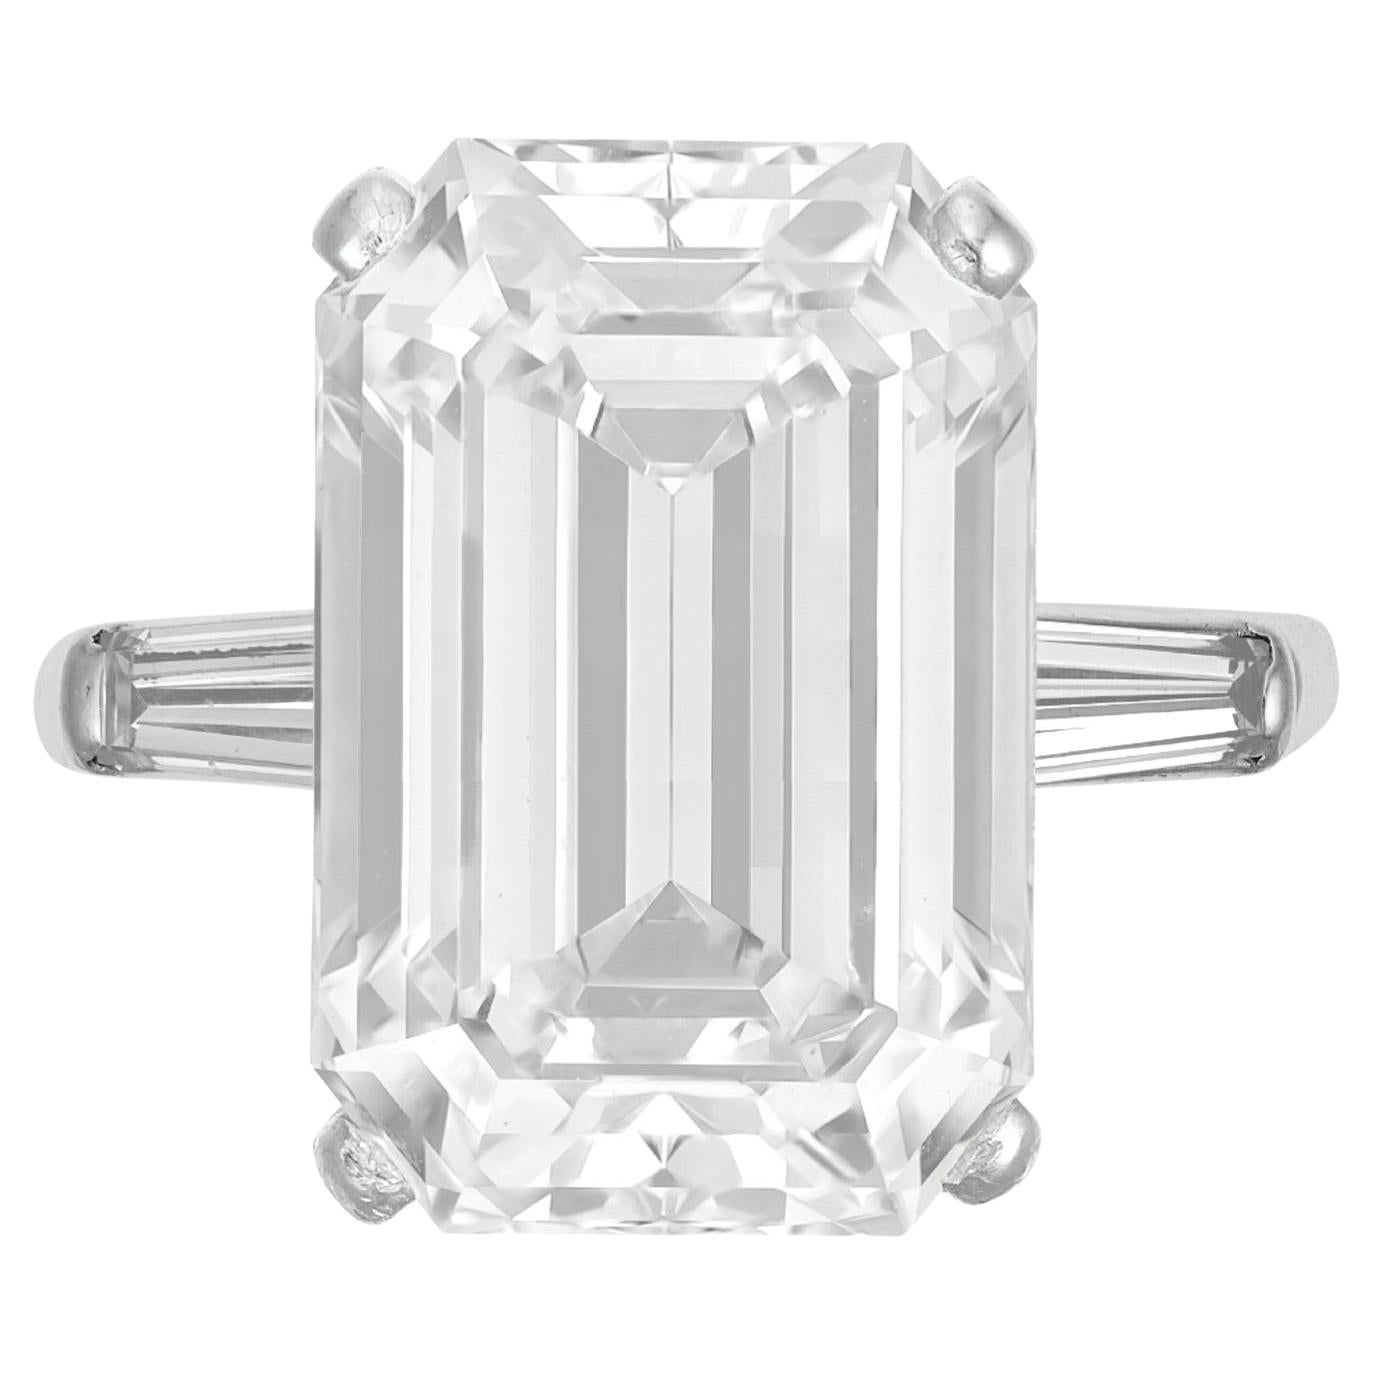 Verlobungsring mit GIA-zertifiziertem 8 Karat Platin-Diamant im runden Brillantschliff